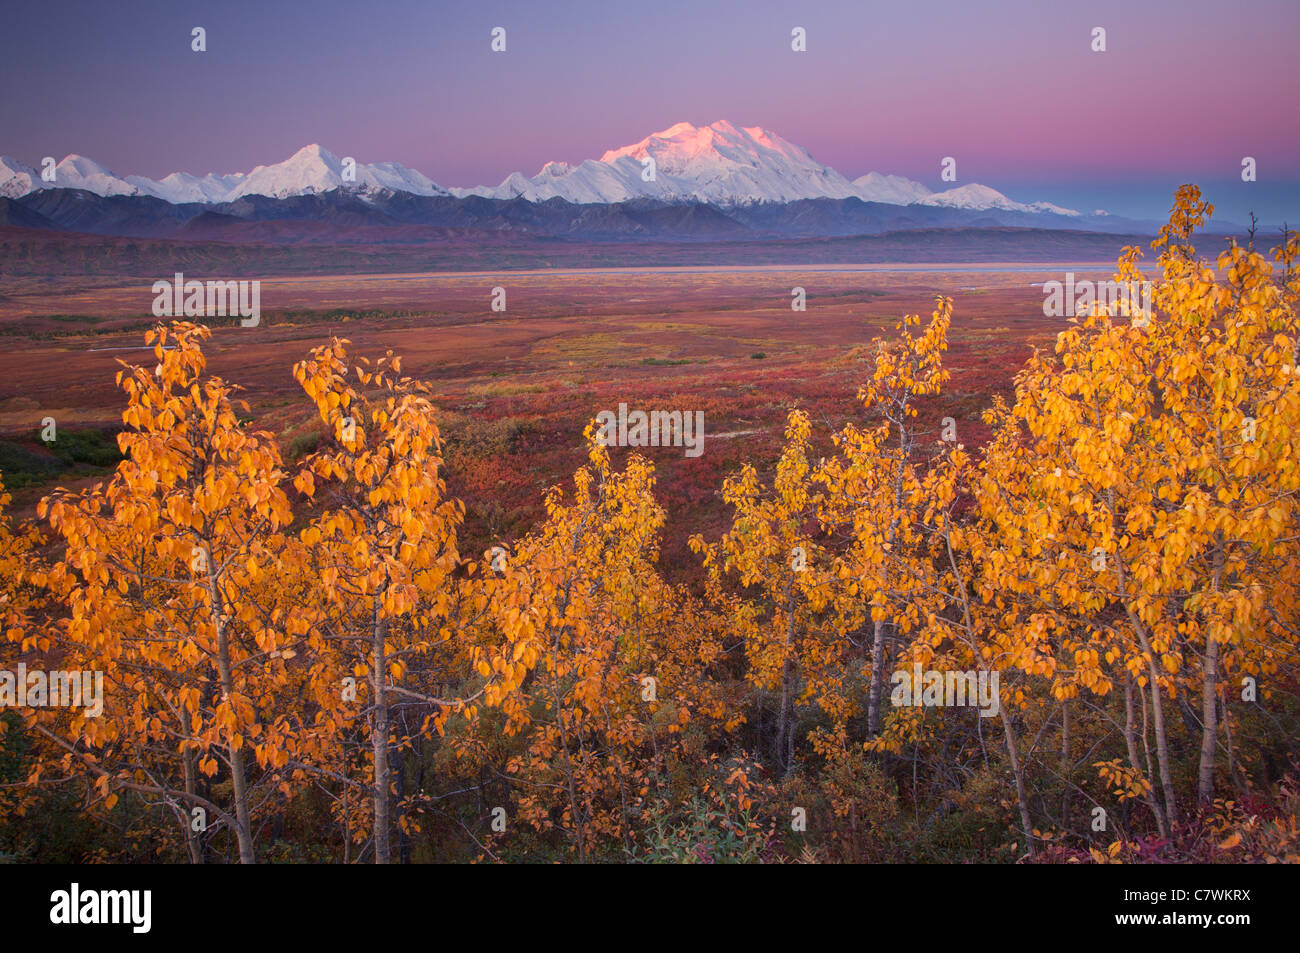 El monte McKinley, también llamado Denali, el Parque Nacional Denali, Alaska. Foto de stock